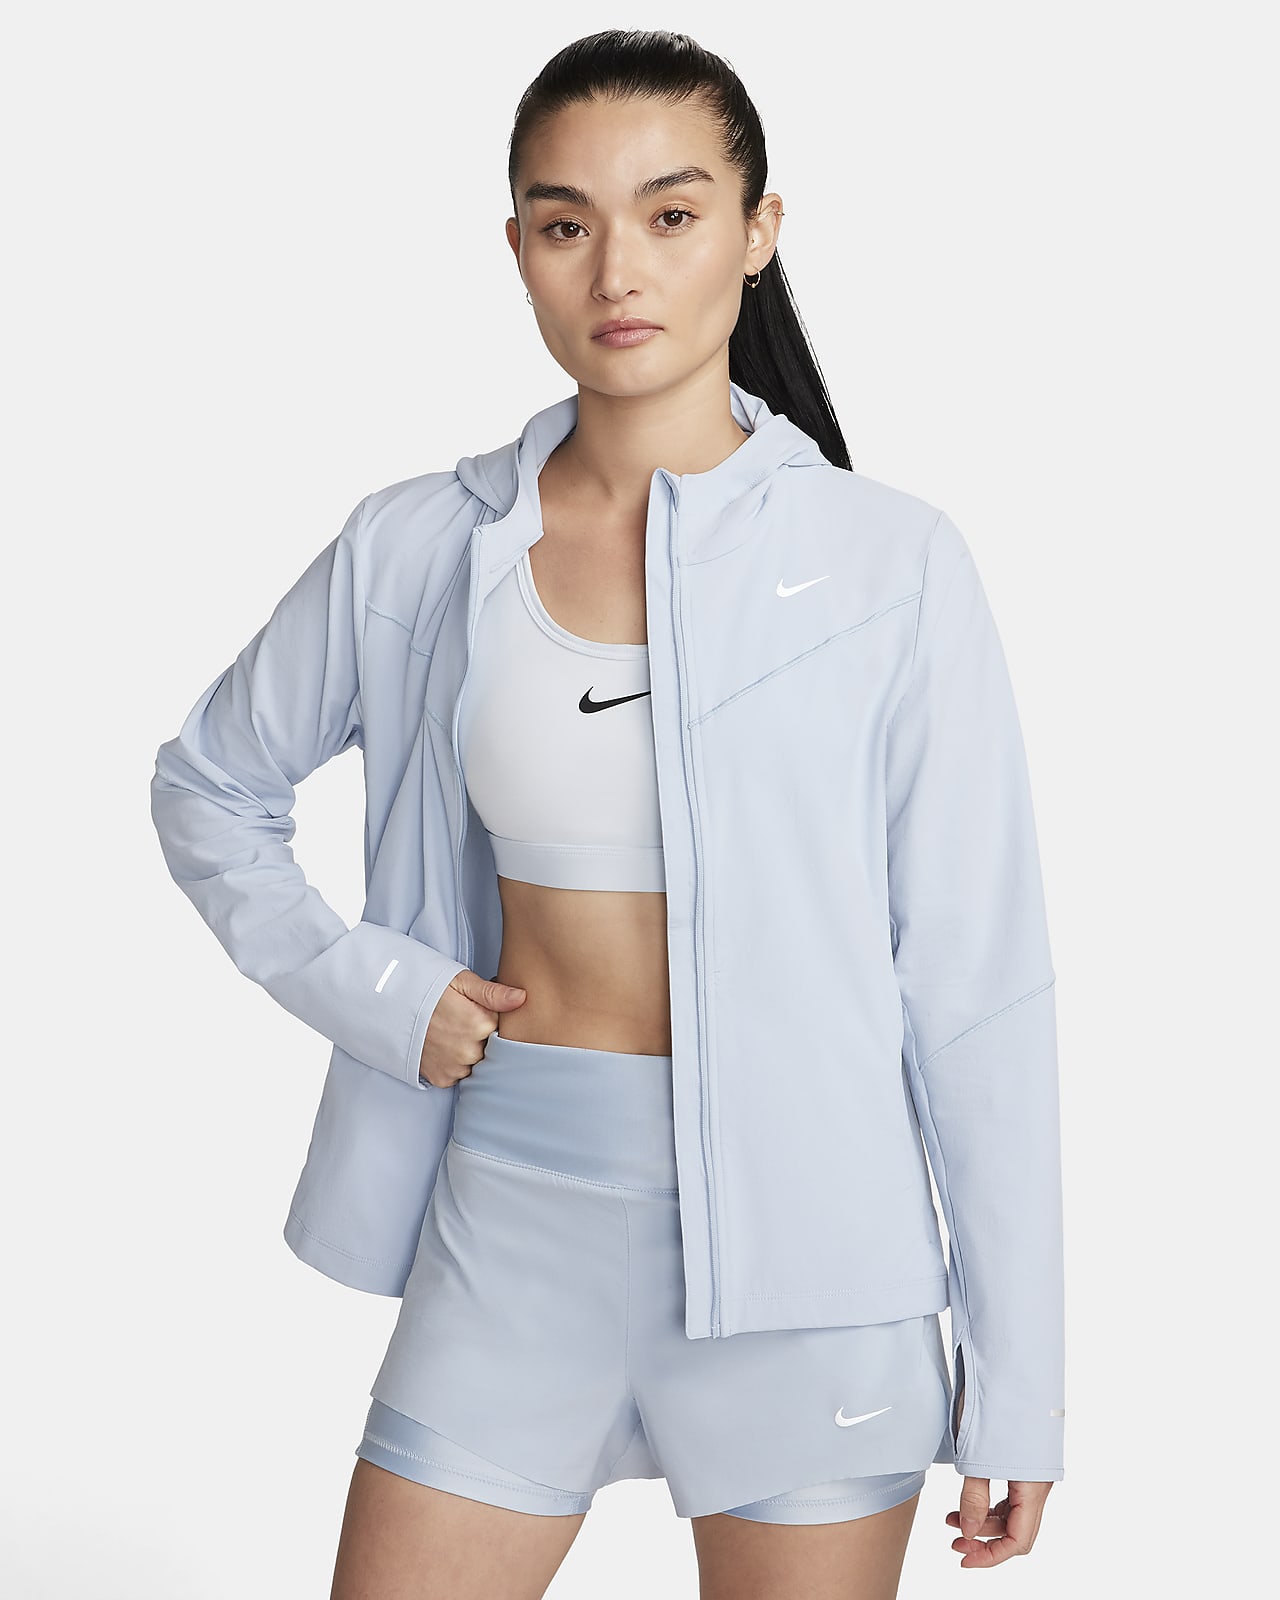 Nike Sportswear Women's Jacket. Nike IN